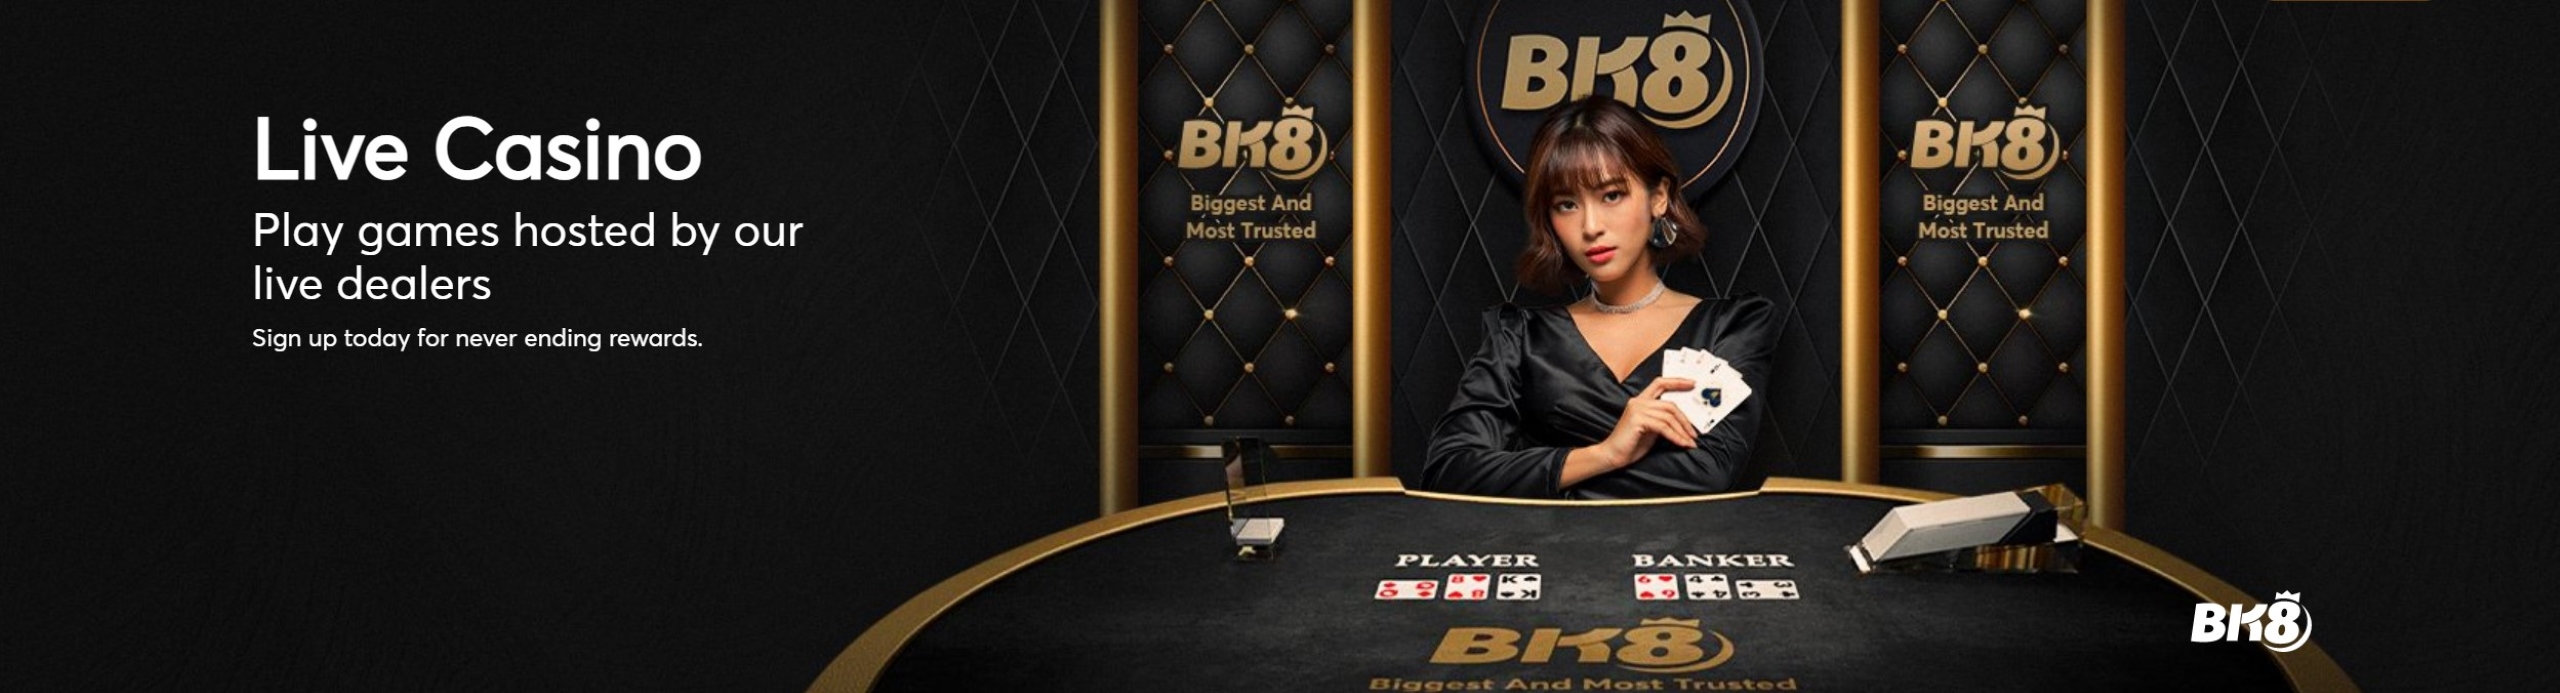 bk8-casino-banner